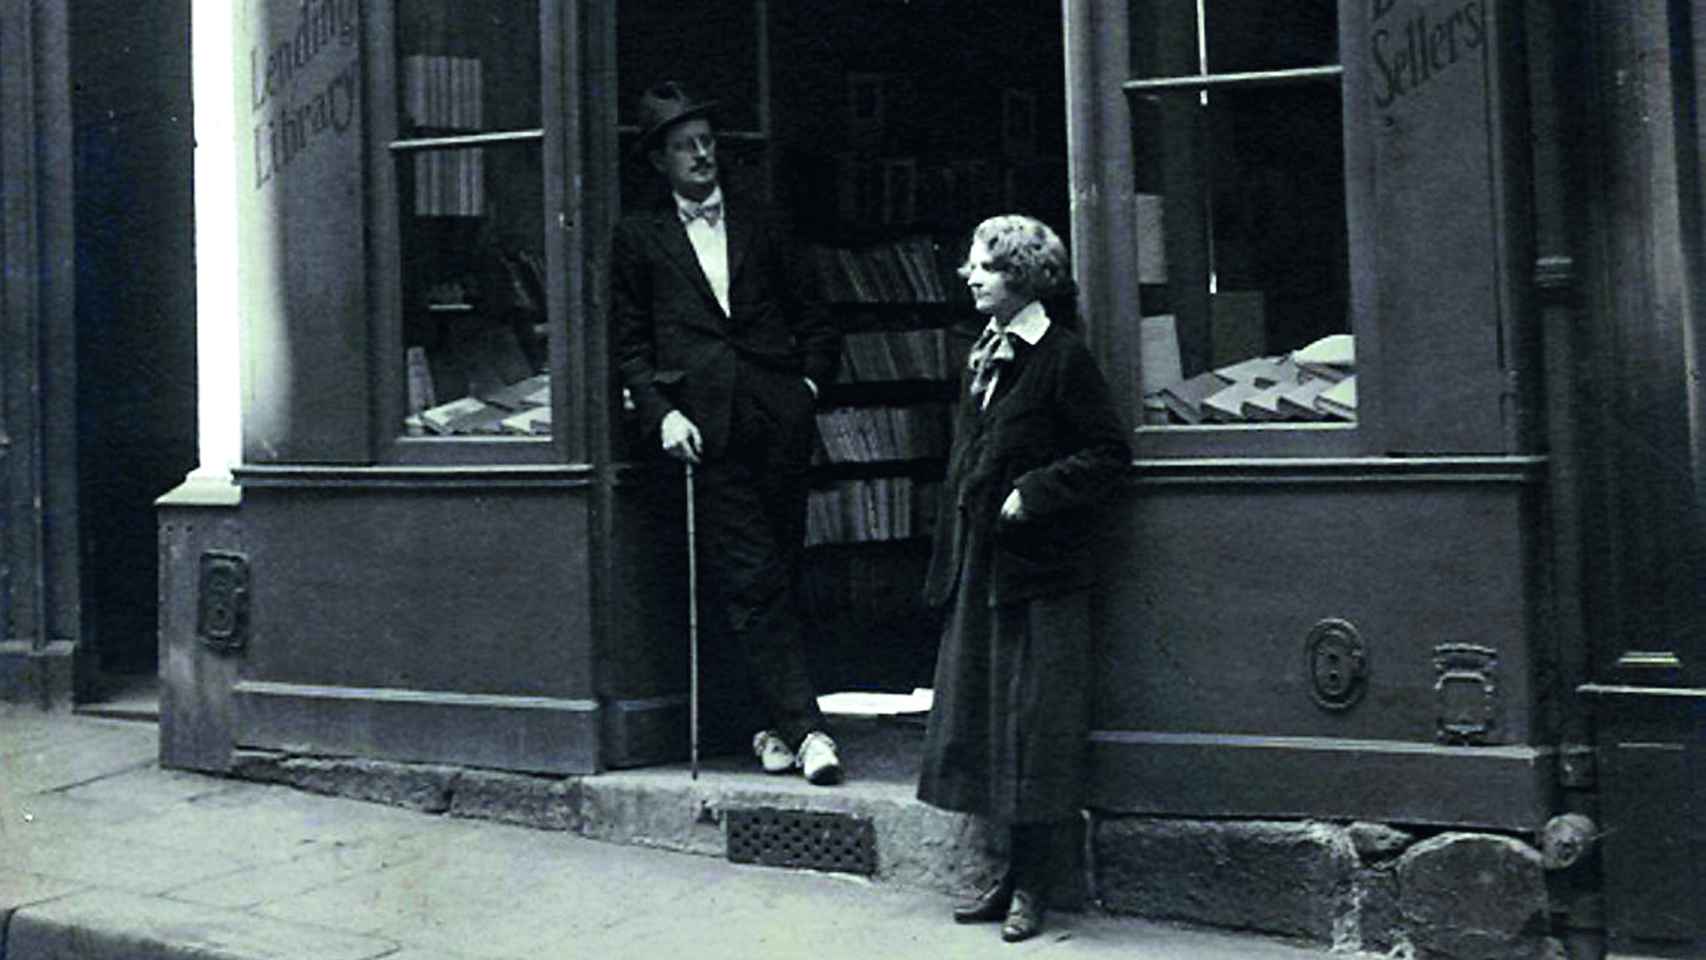 Joyce y Sylvia Beach en la puerta de la librería Shakespeare and Company, en París